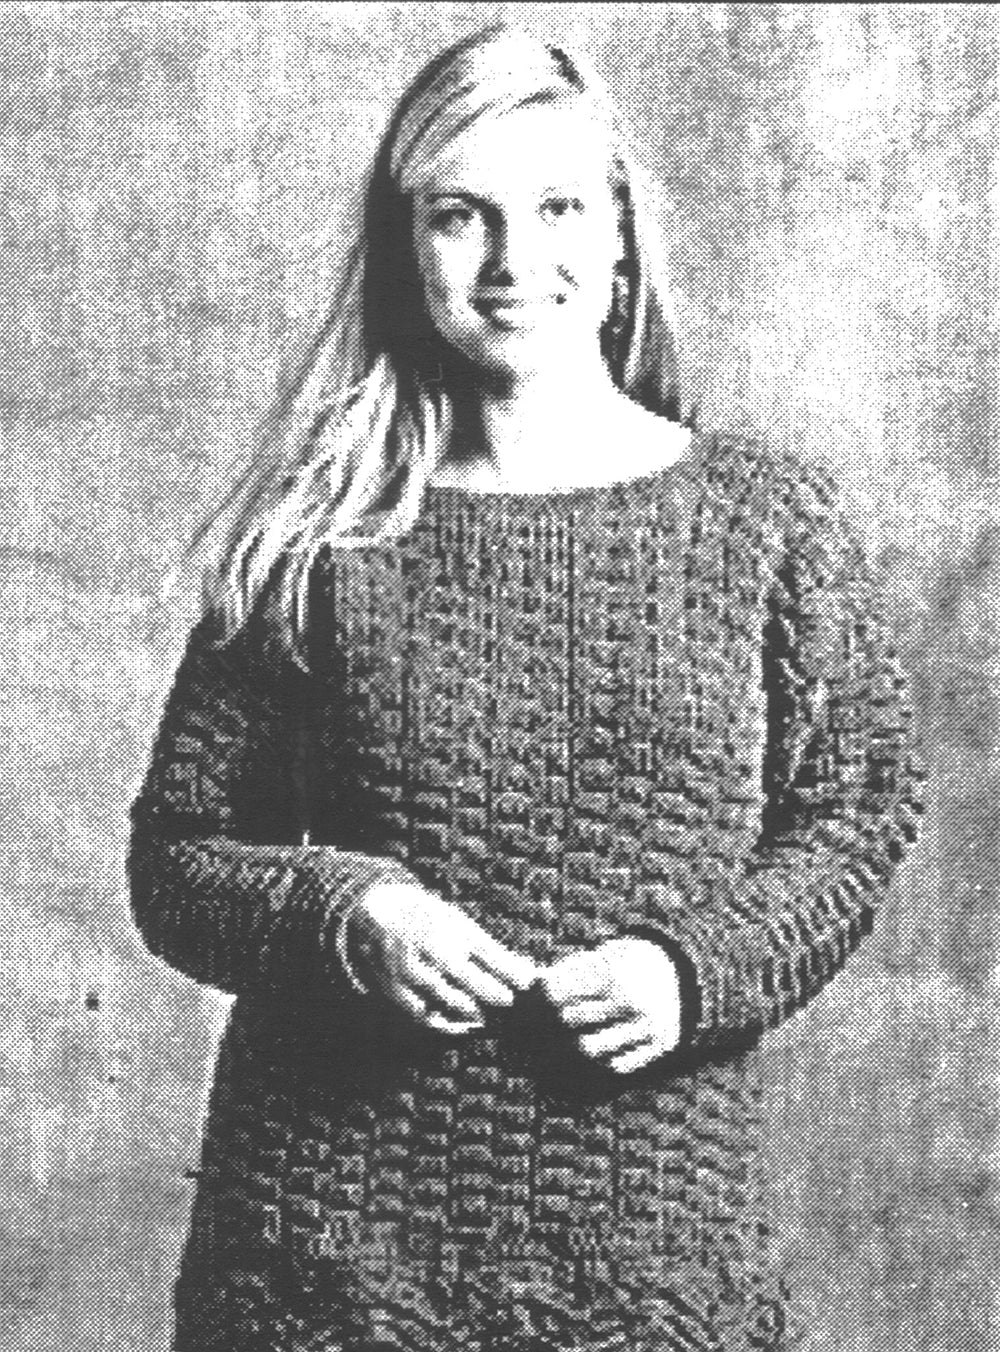 Crochet Tunic Pattern